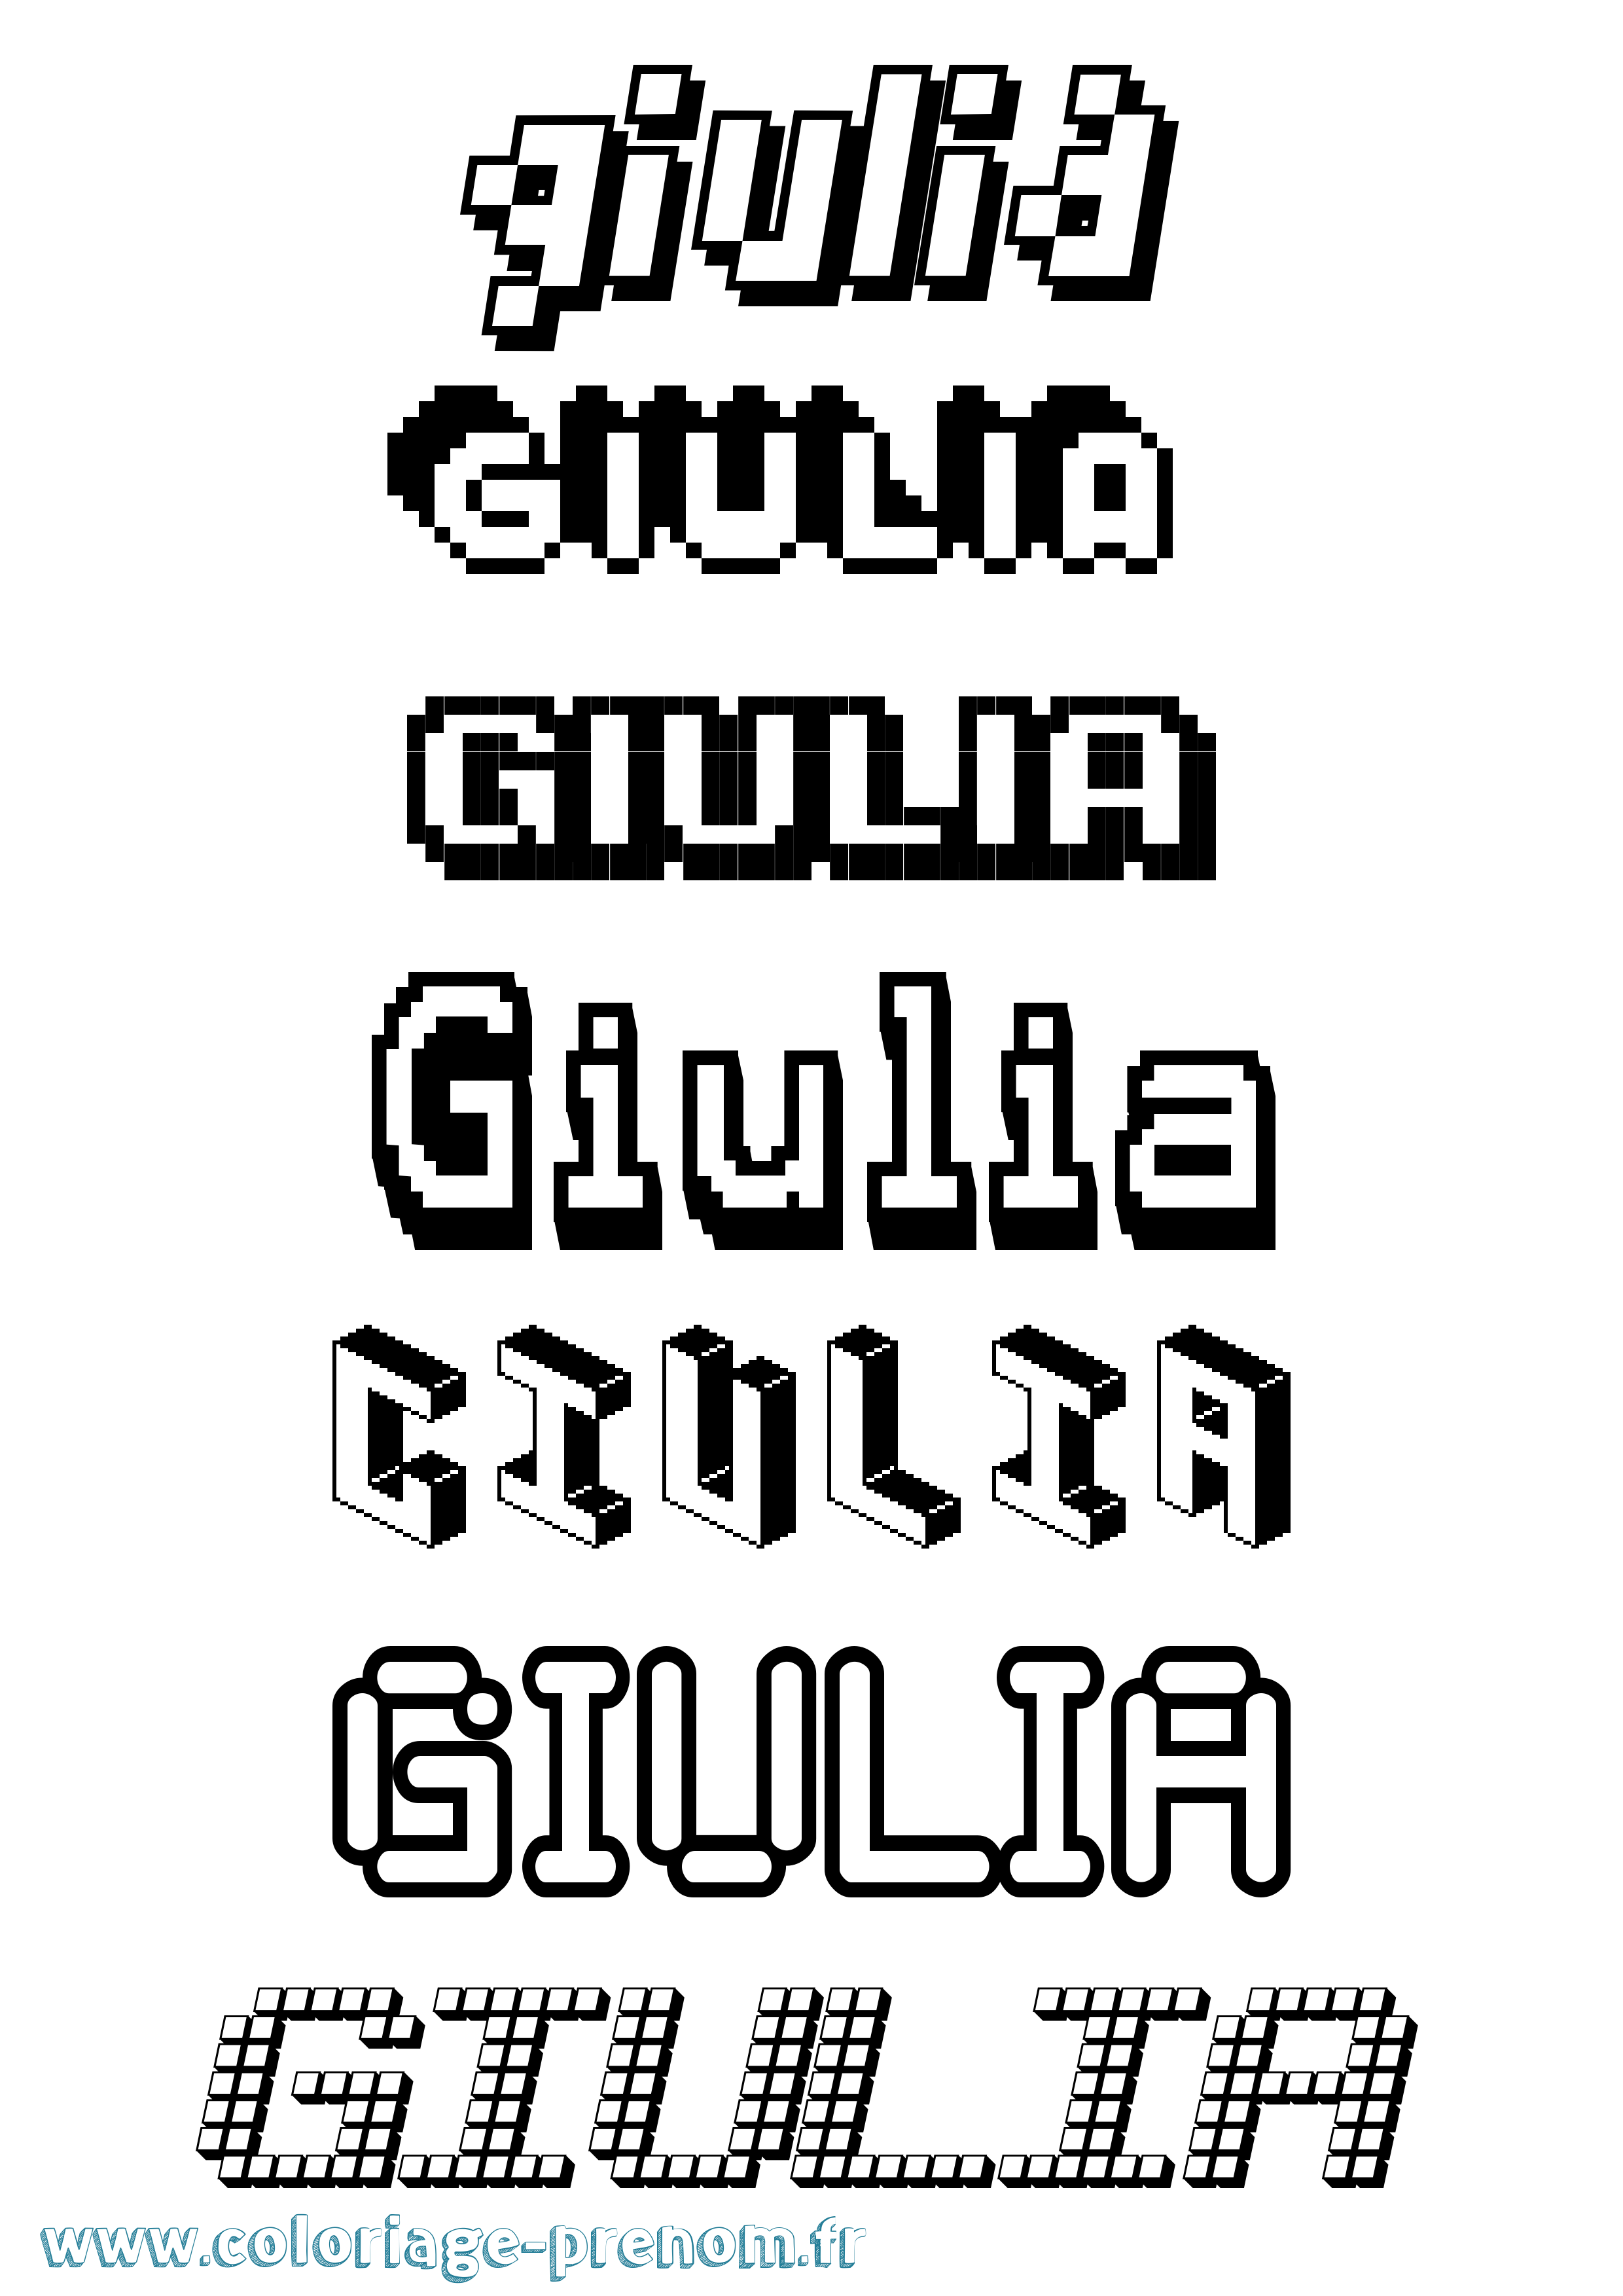 Coloriage prénom Giulia